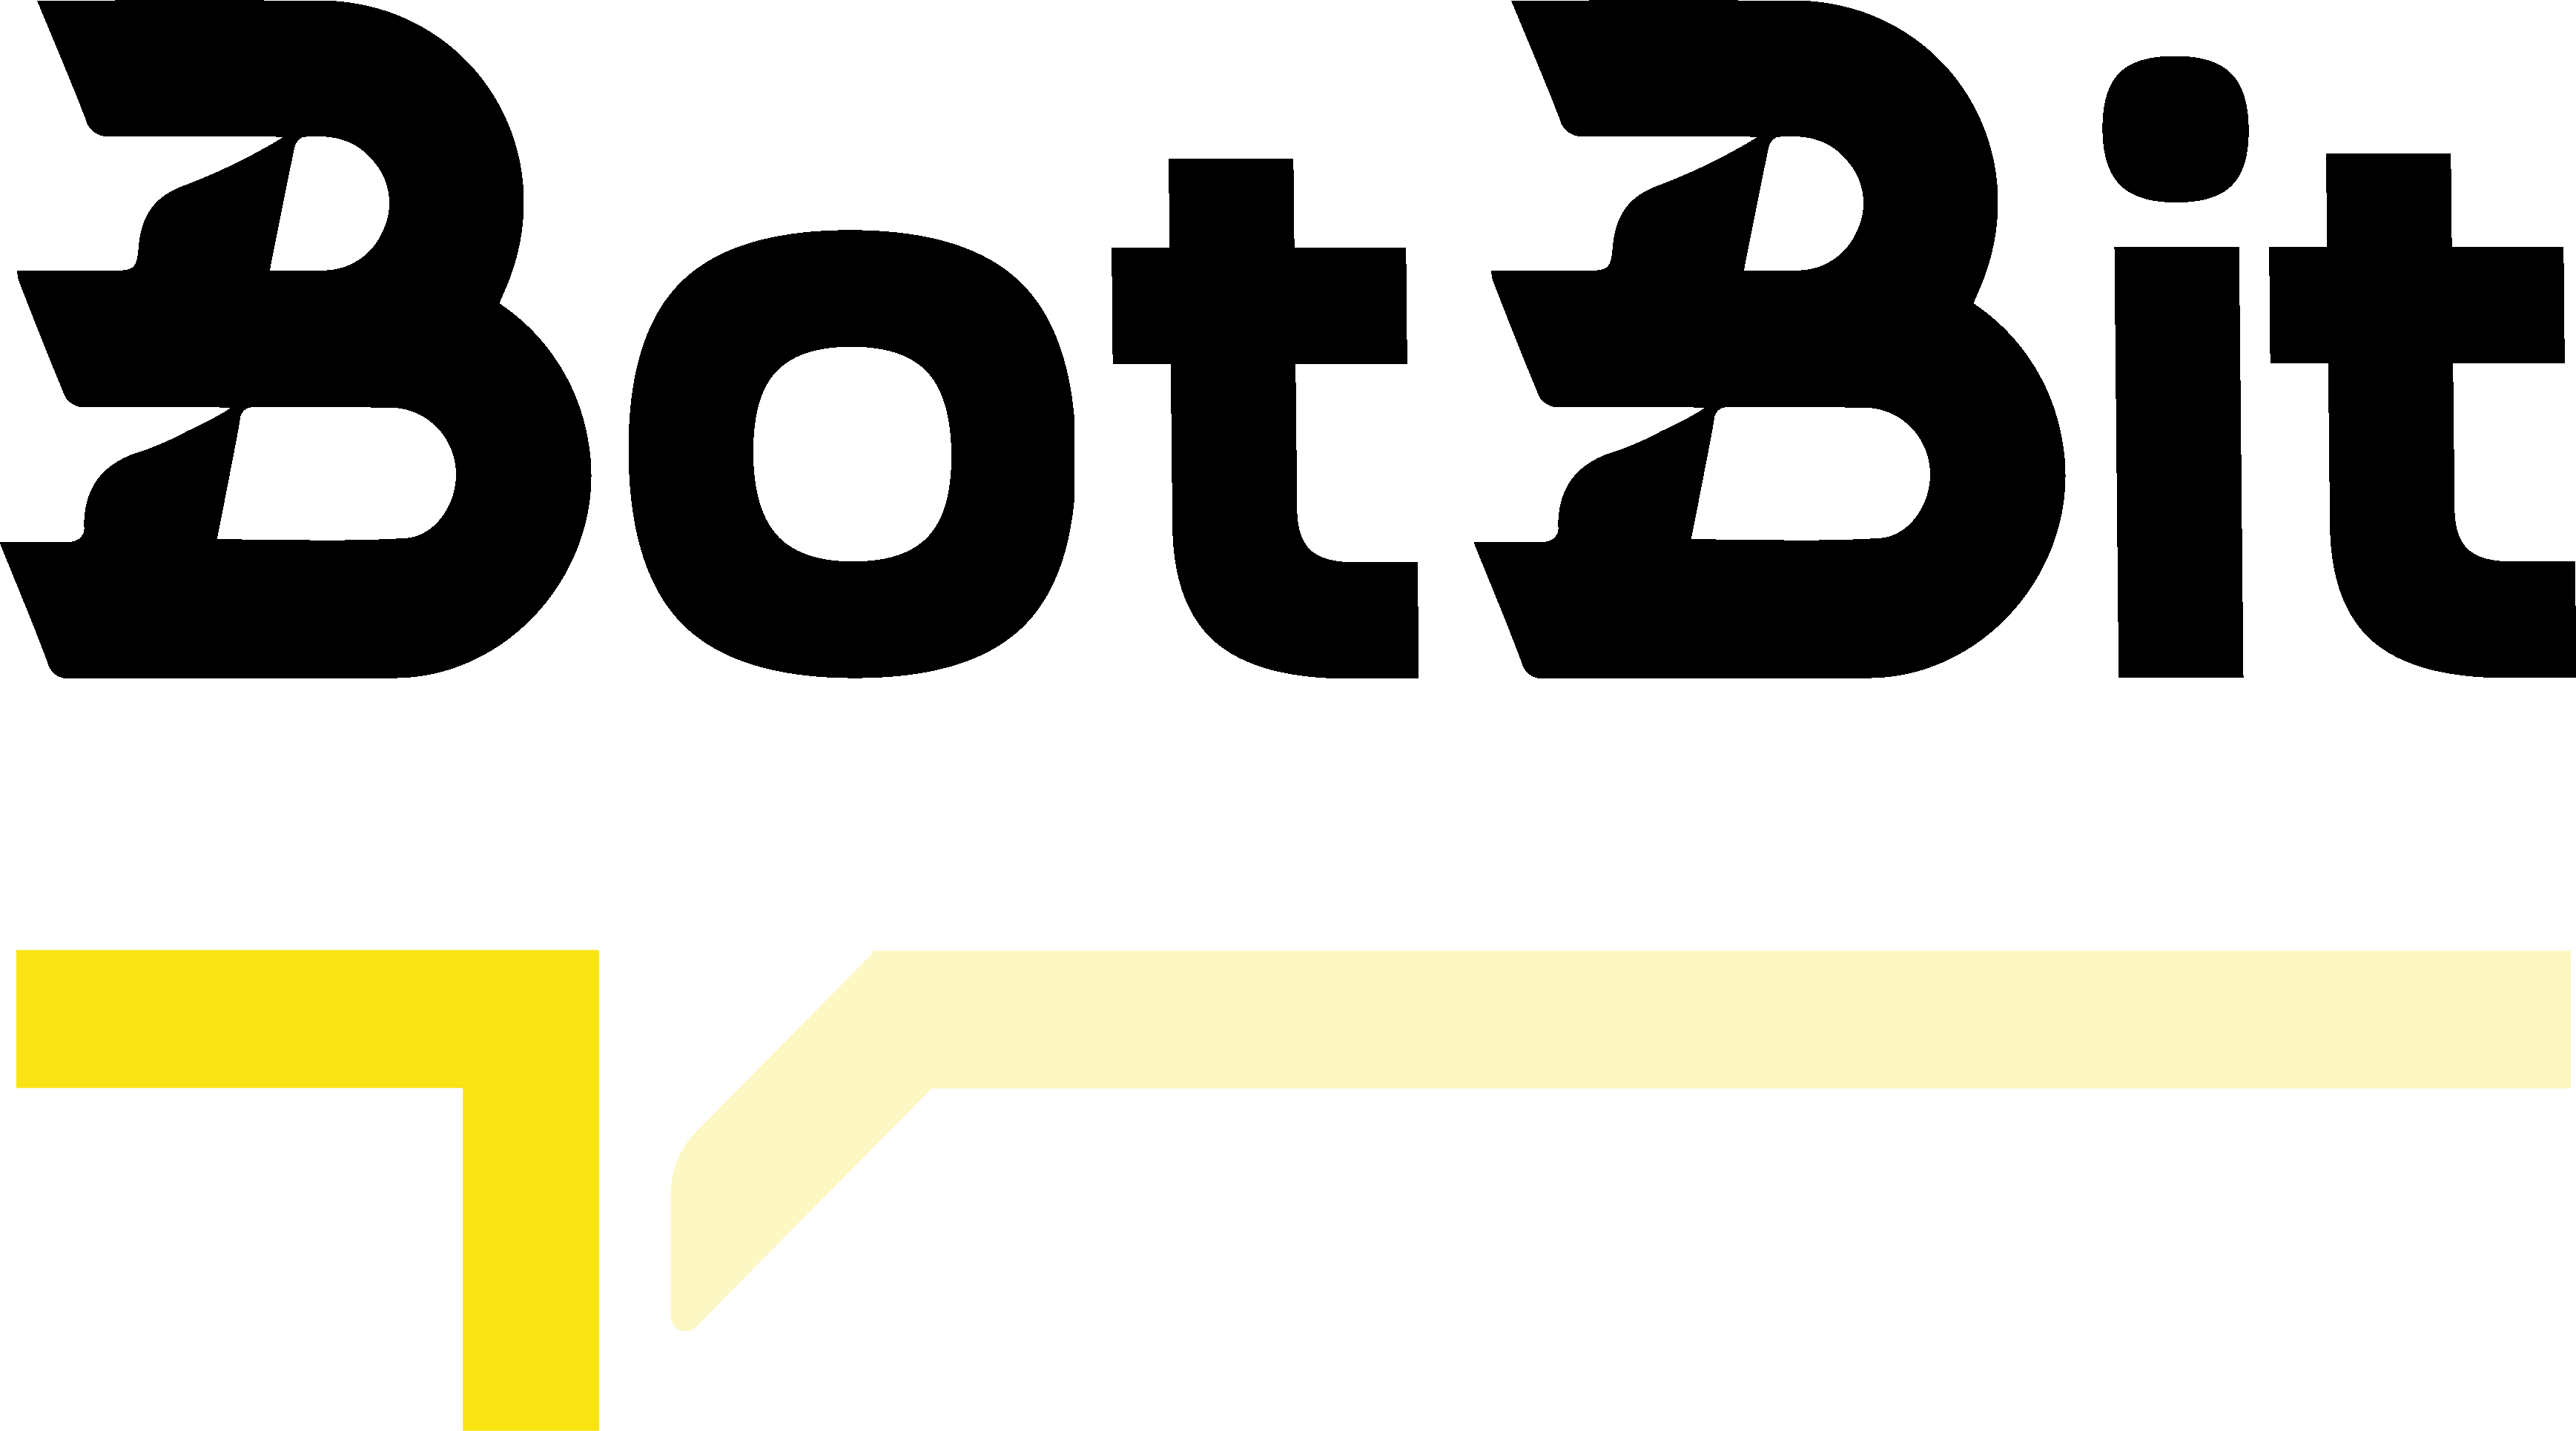 BotBit logo black